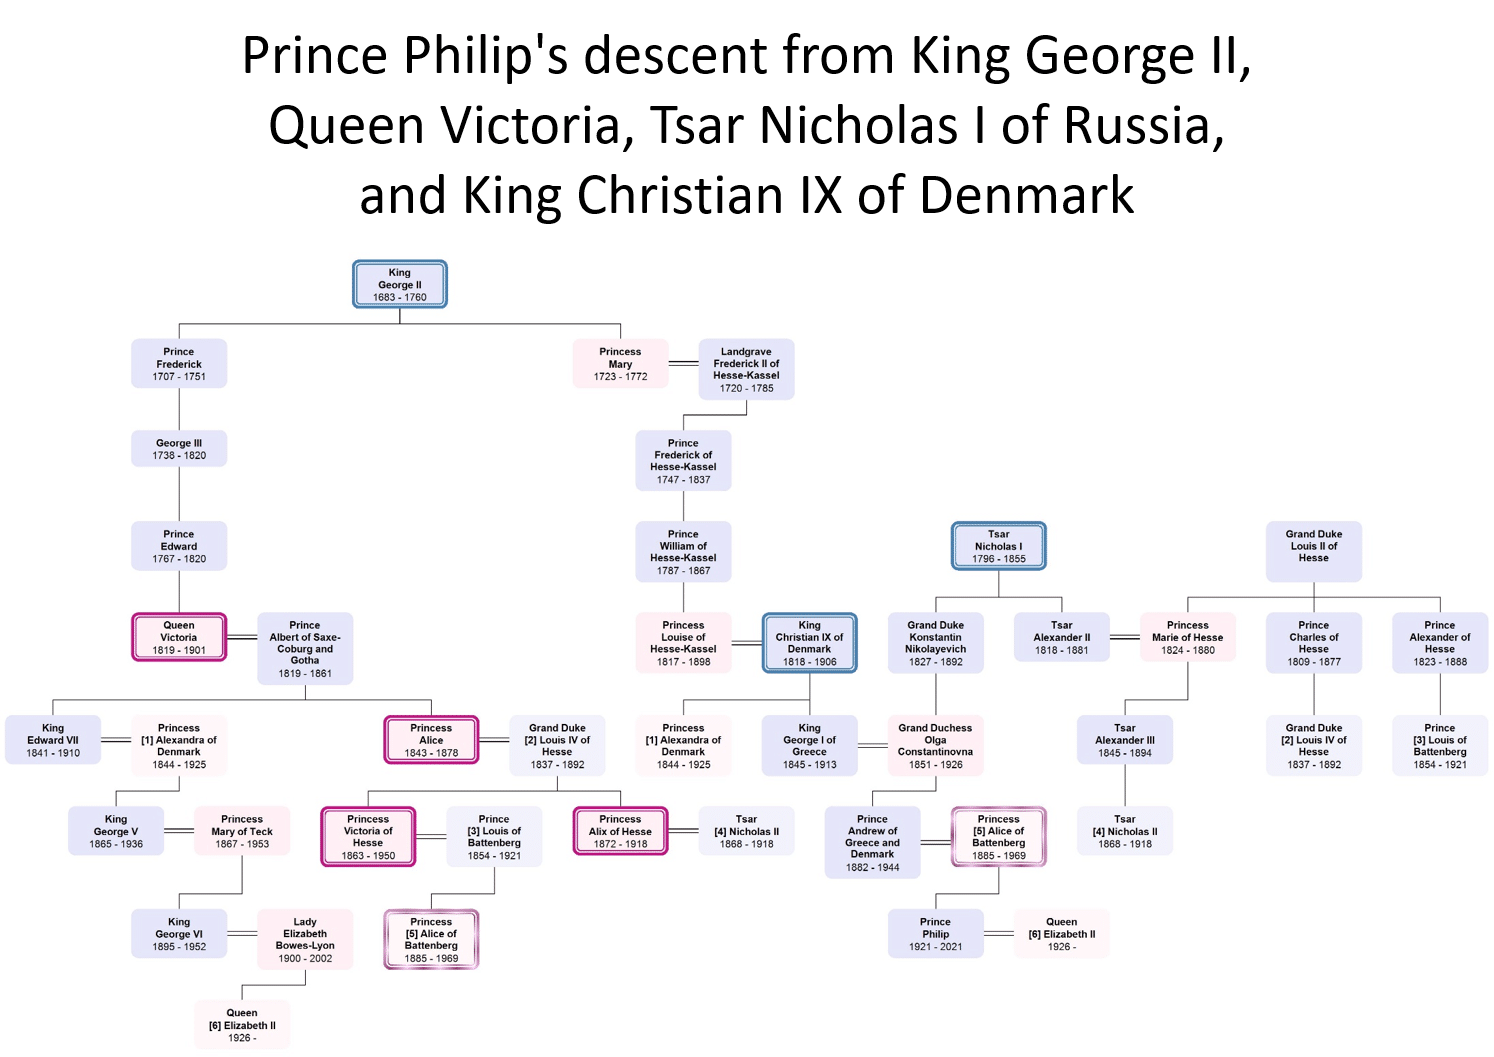 Carolines bild som illustrerar prins Philips kungliga familjeförbindelser